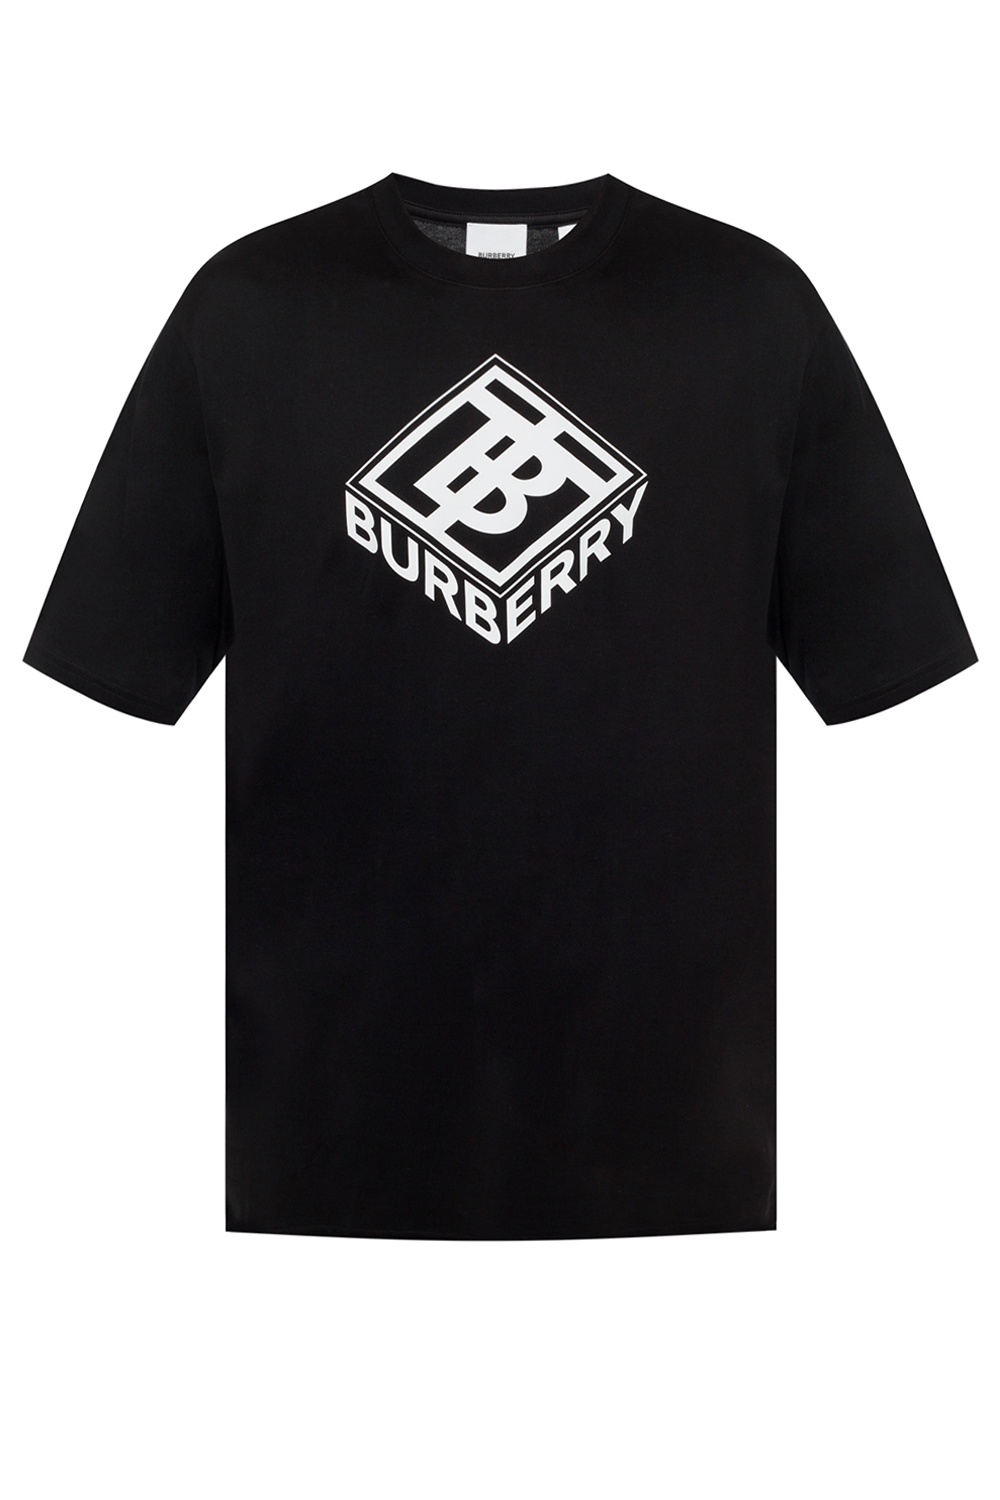 Burberry t Shirt man. Burberry футболка значок. Футболка Burberry лимитка. Футболка Барбери мужская черная. Вб дон